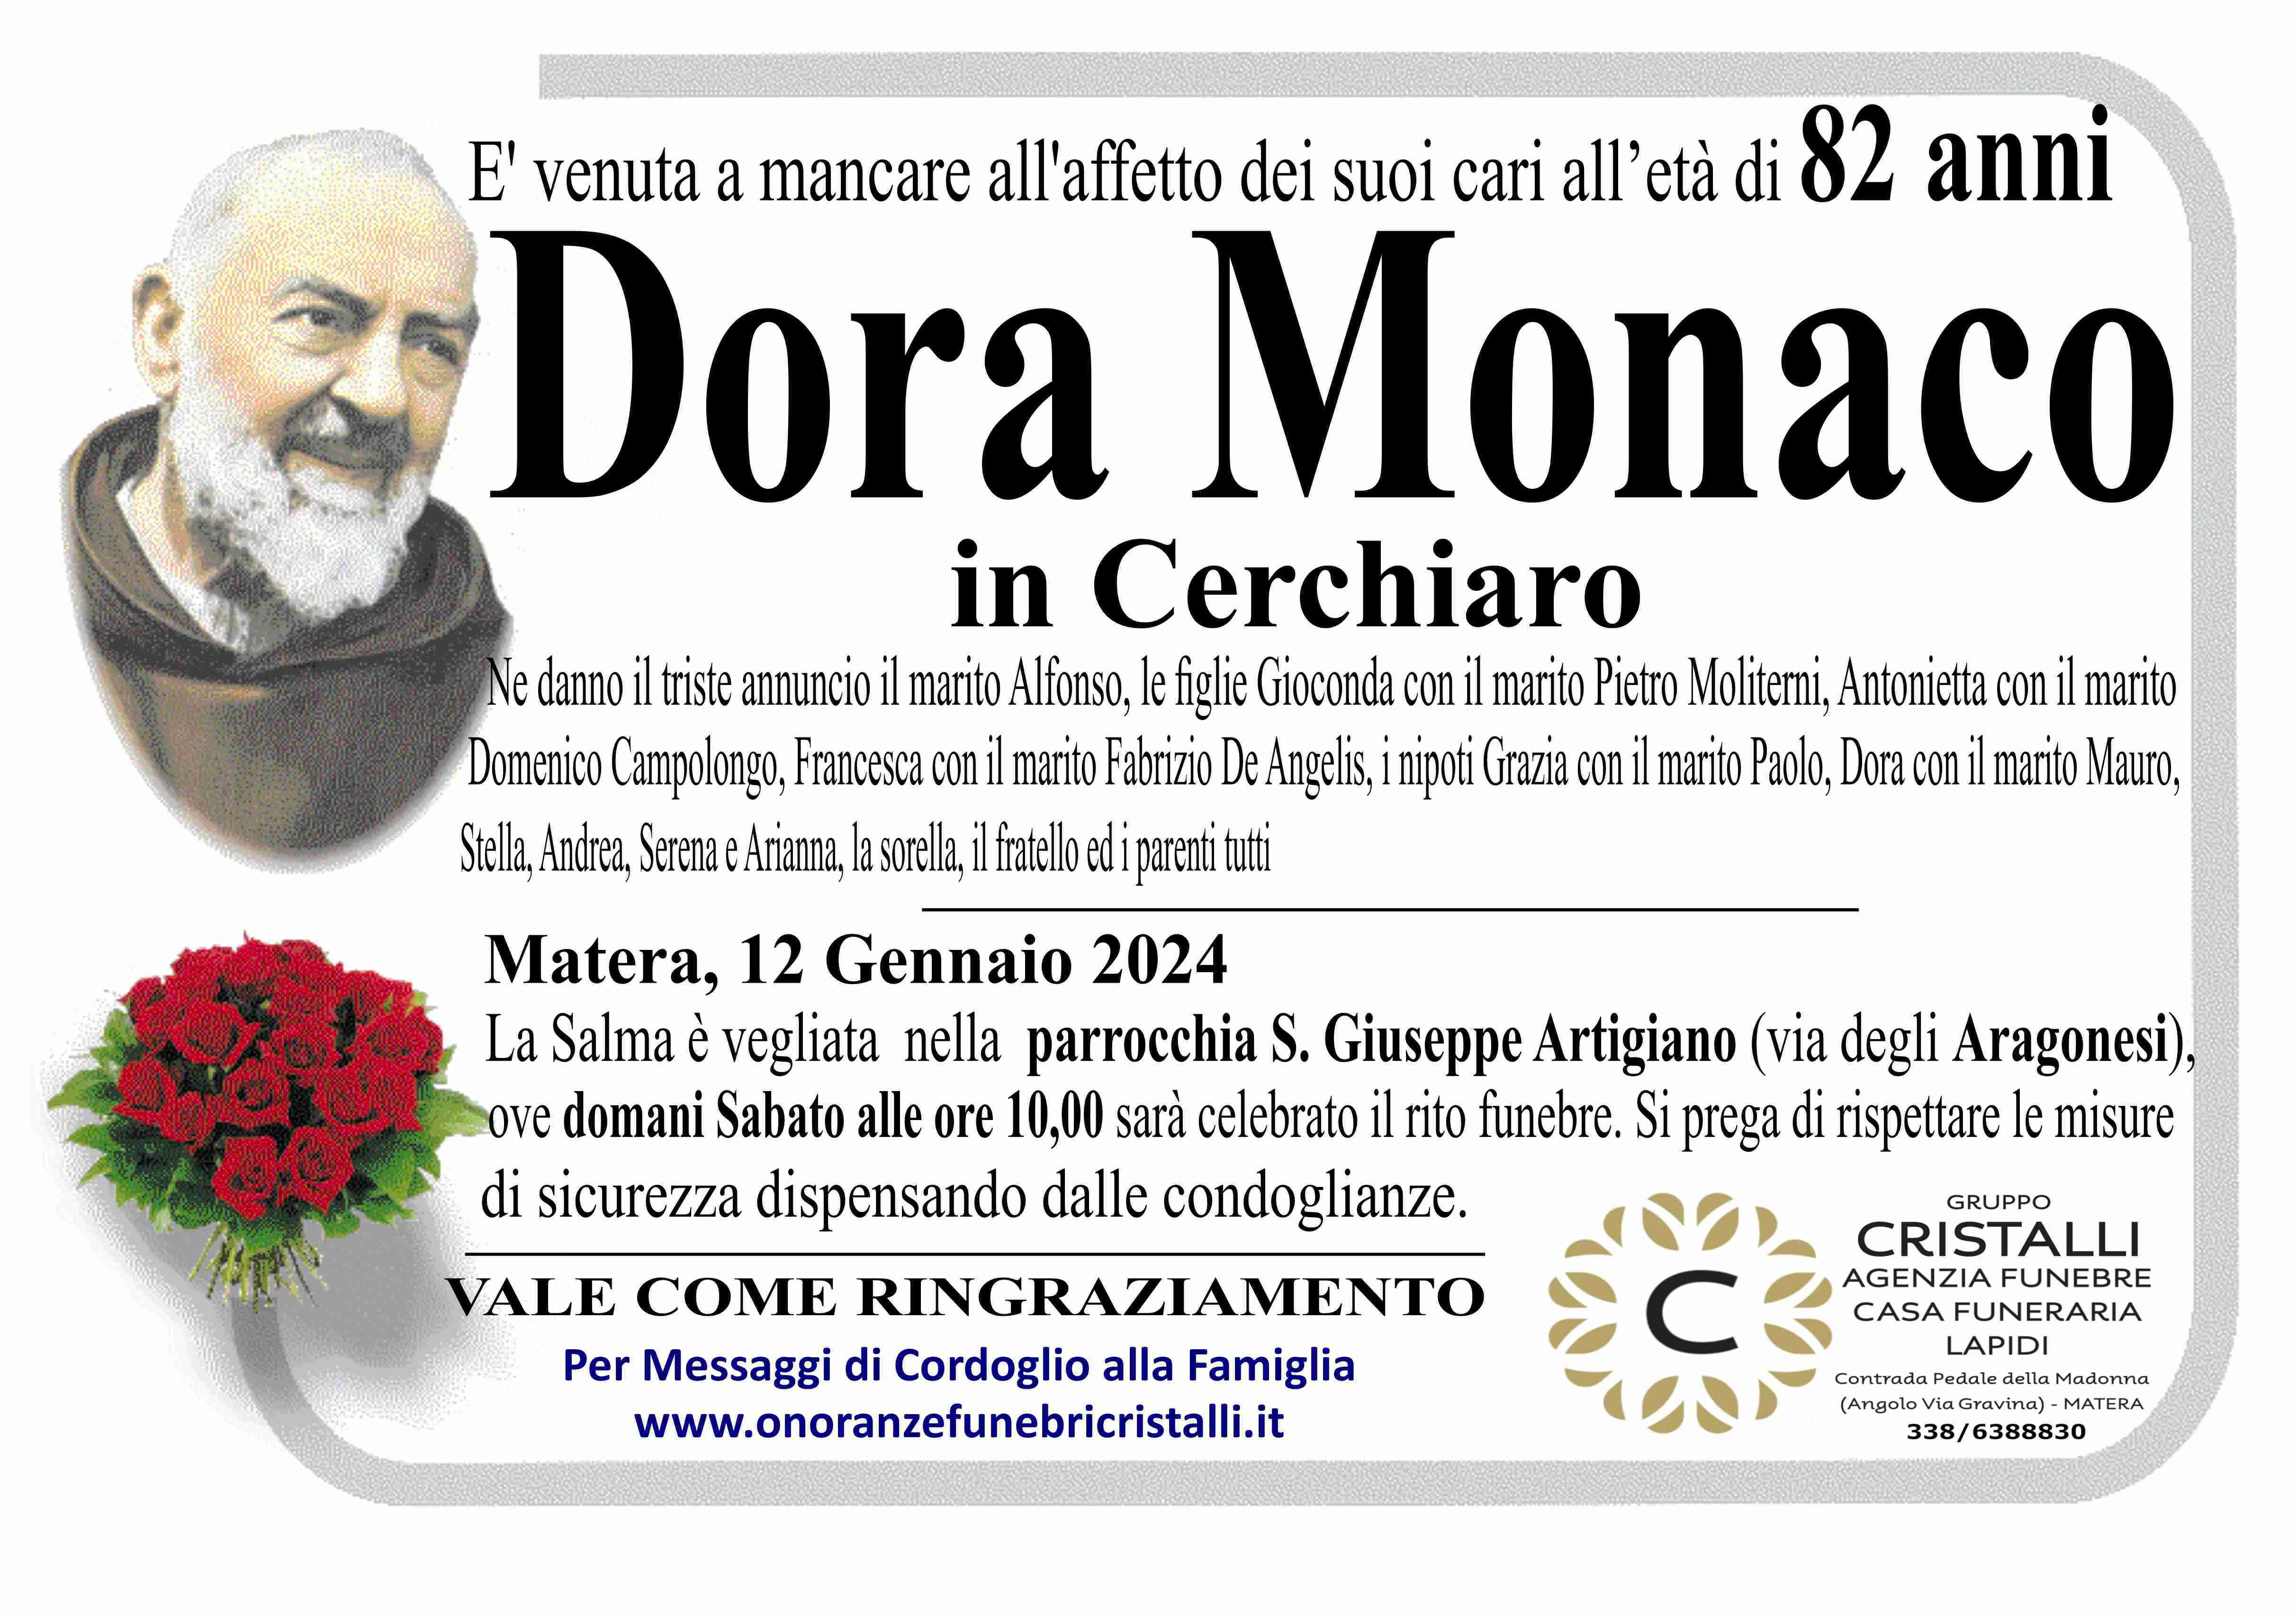 Dora Monaco